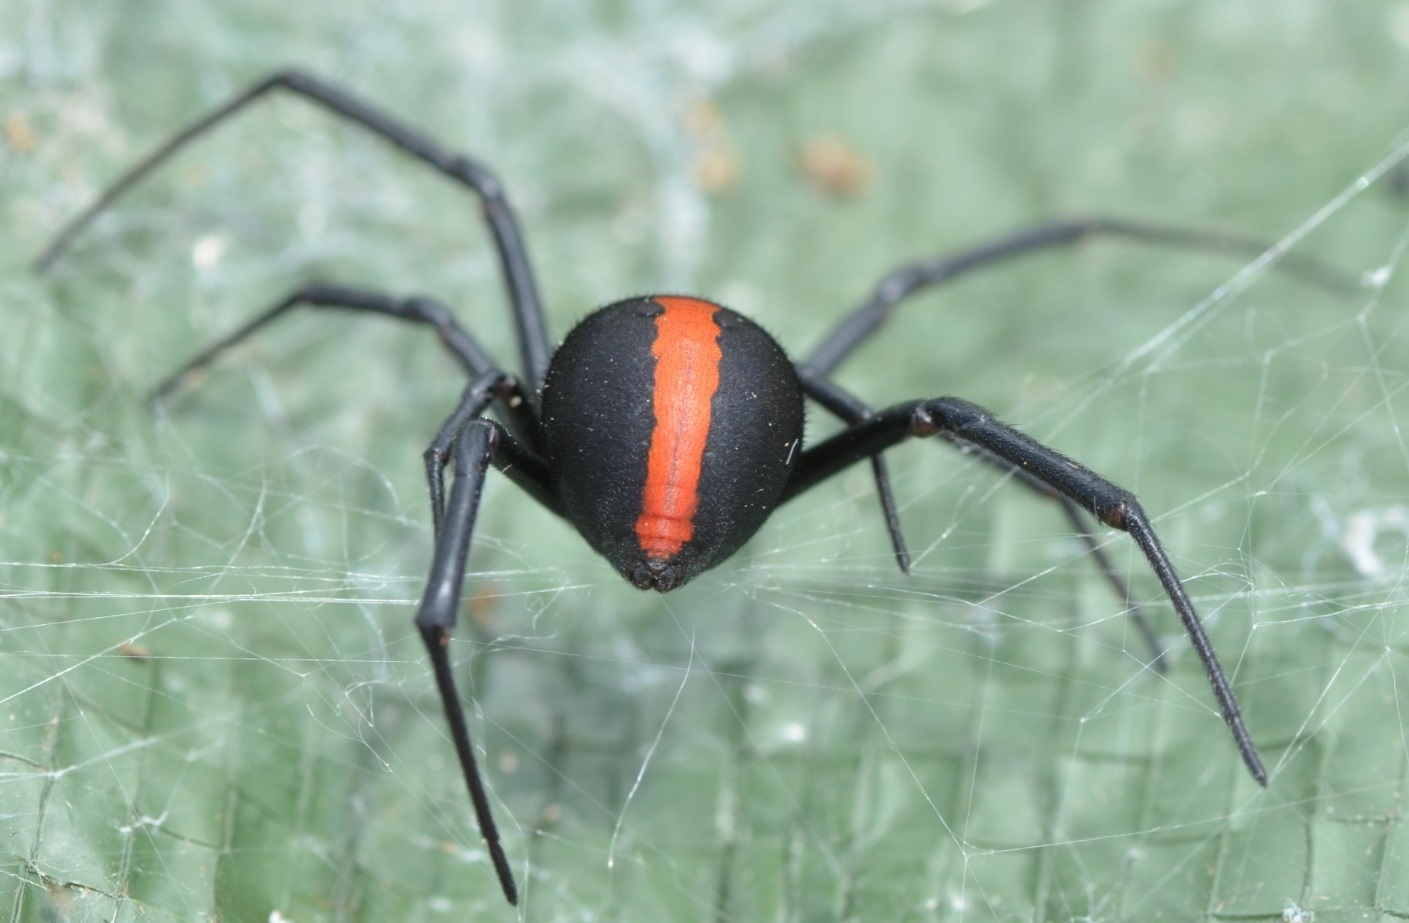 Spider Bites Australia